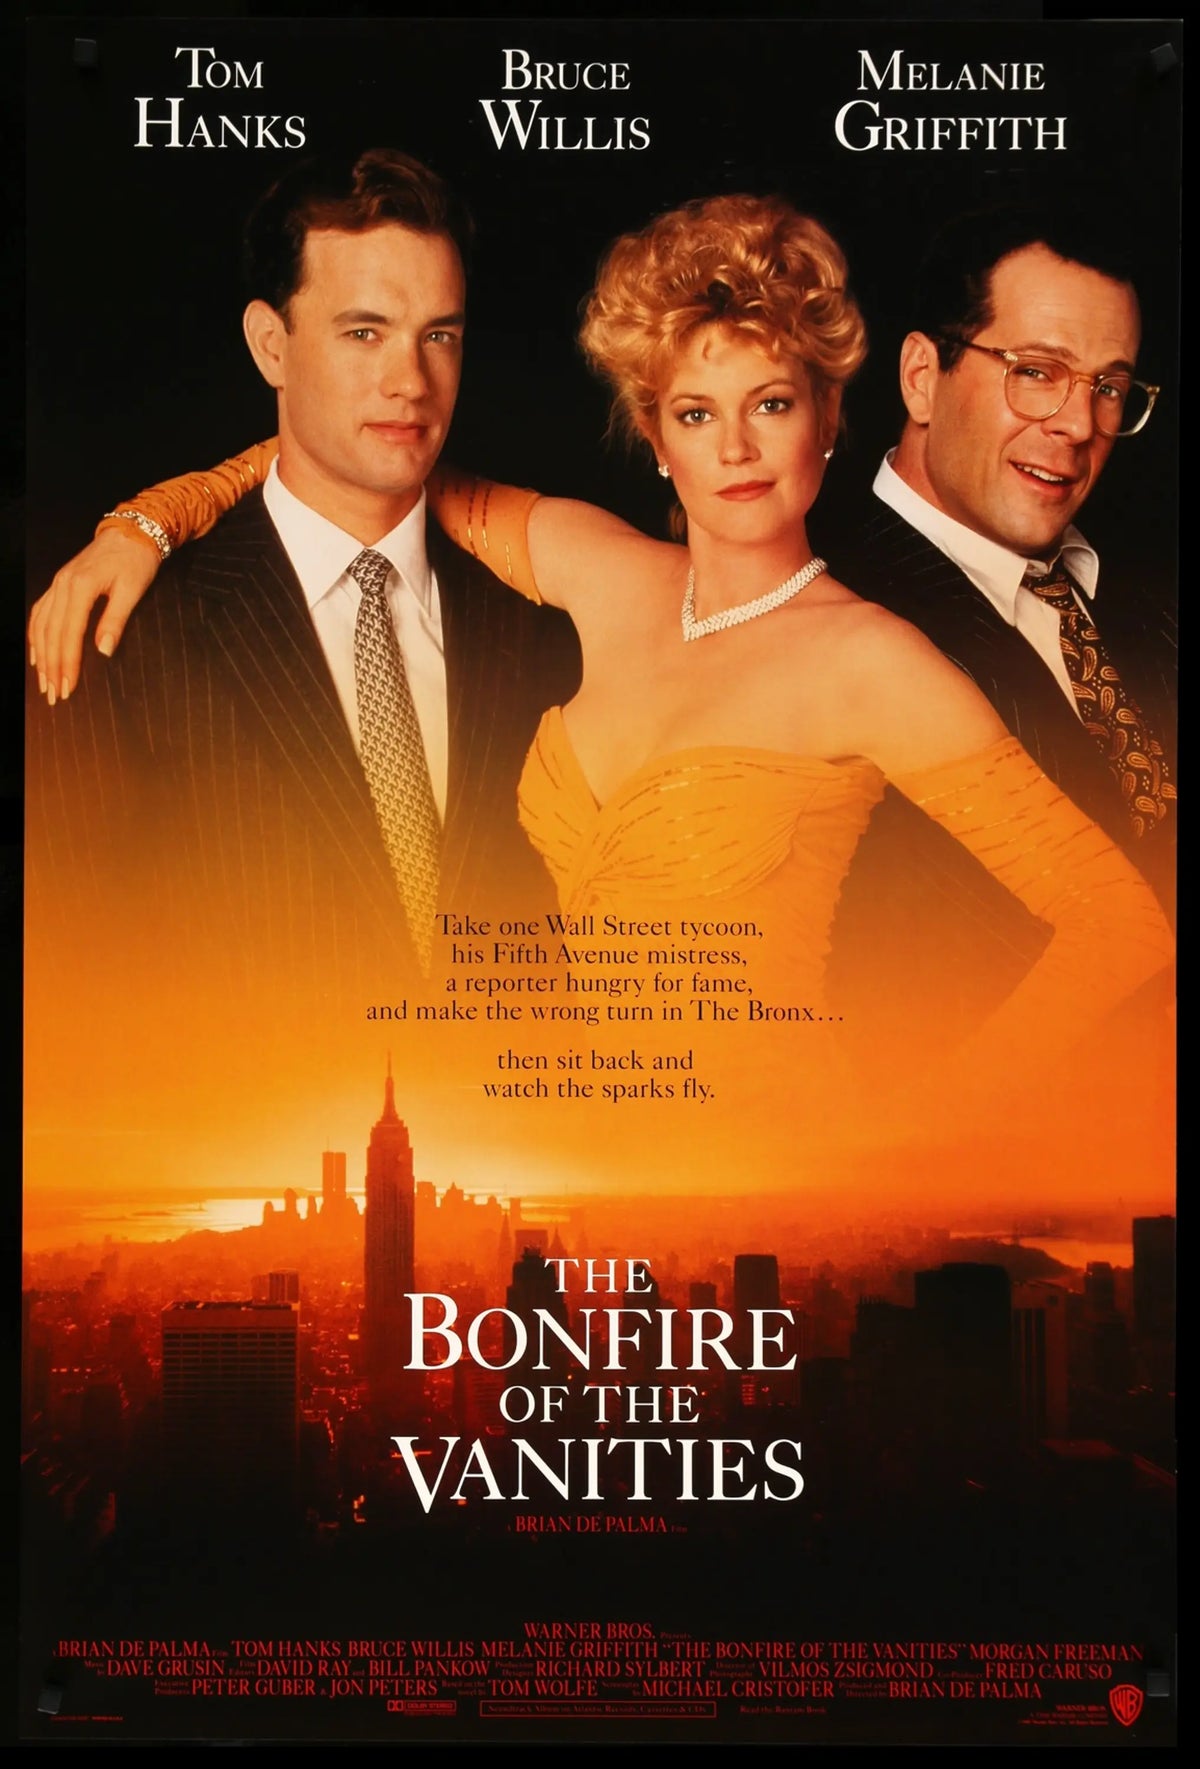 Bonfire of the Vanities (1990) original movie poster for sale at Original Film Art